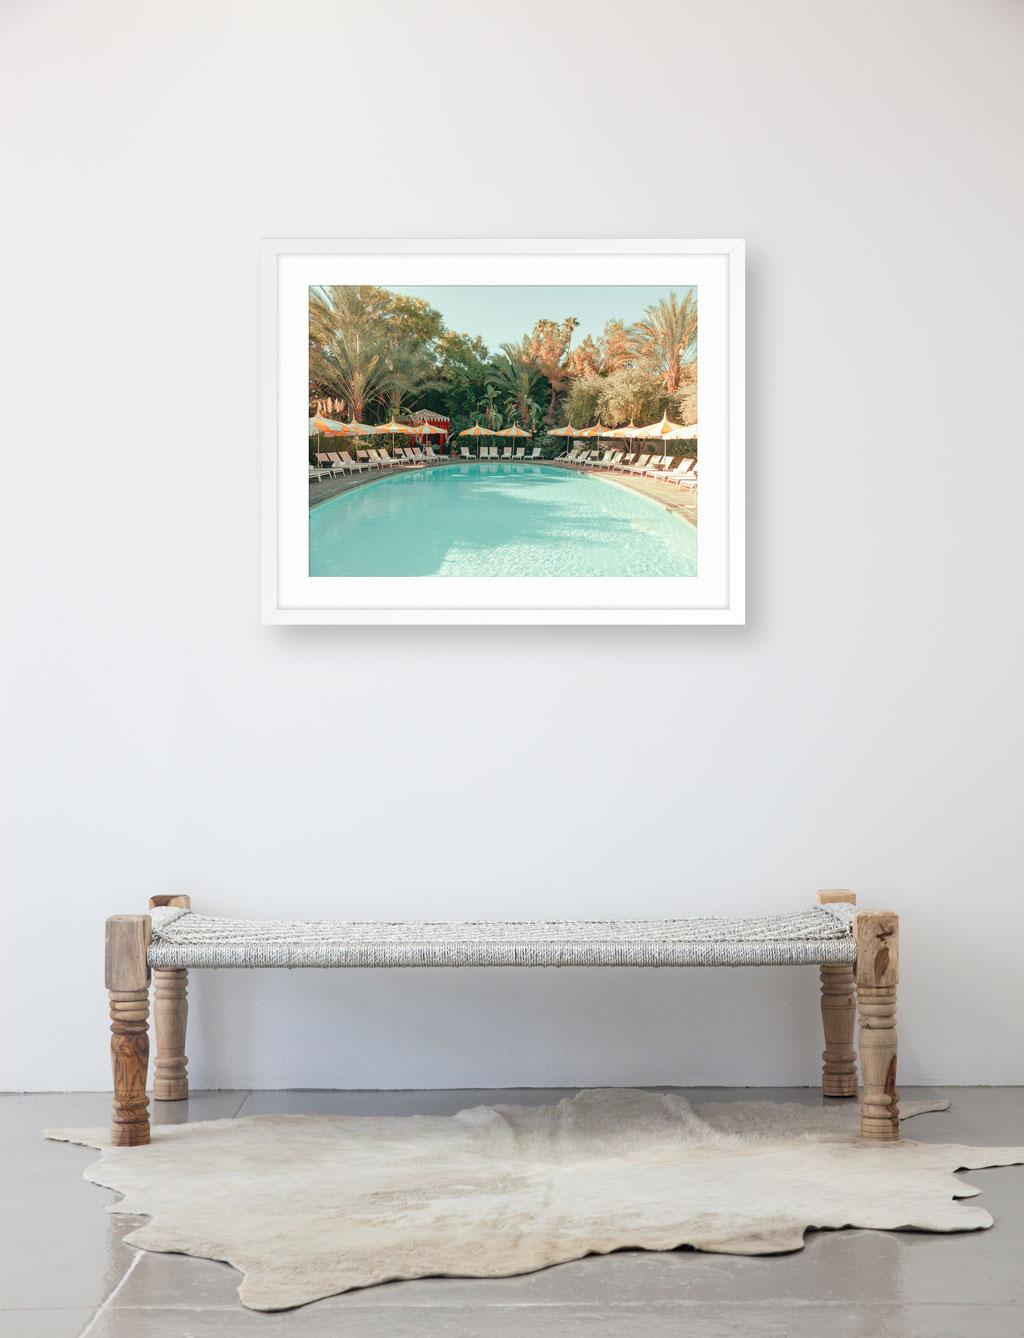 Le piscine de Palm Springs - Photograph de Ludwig Favre